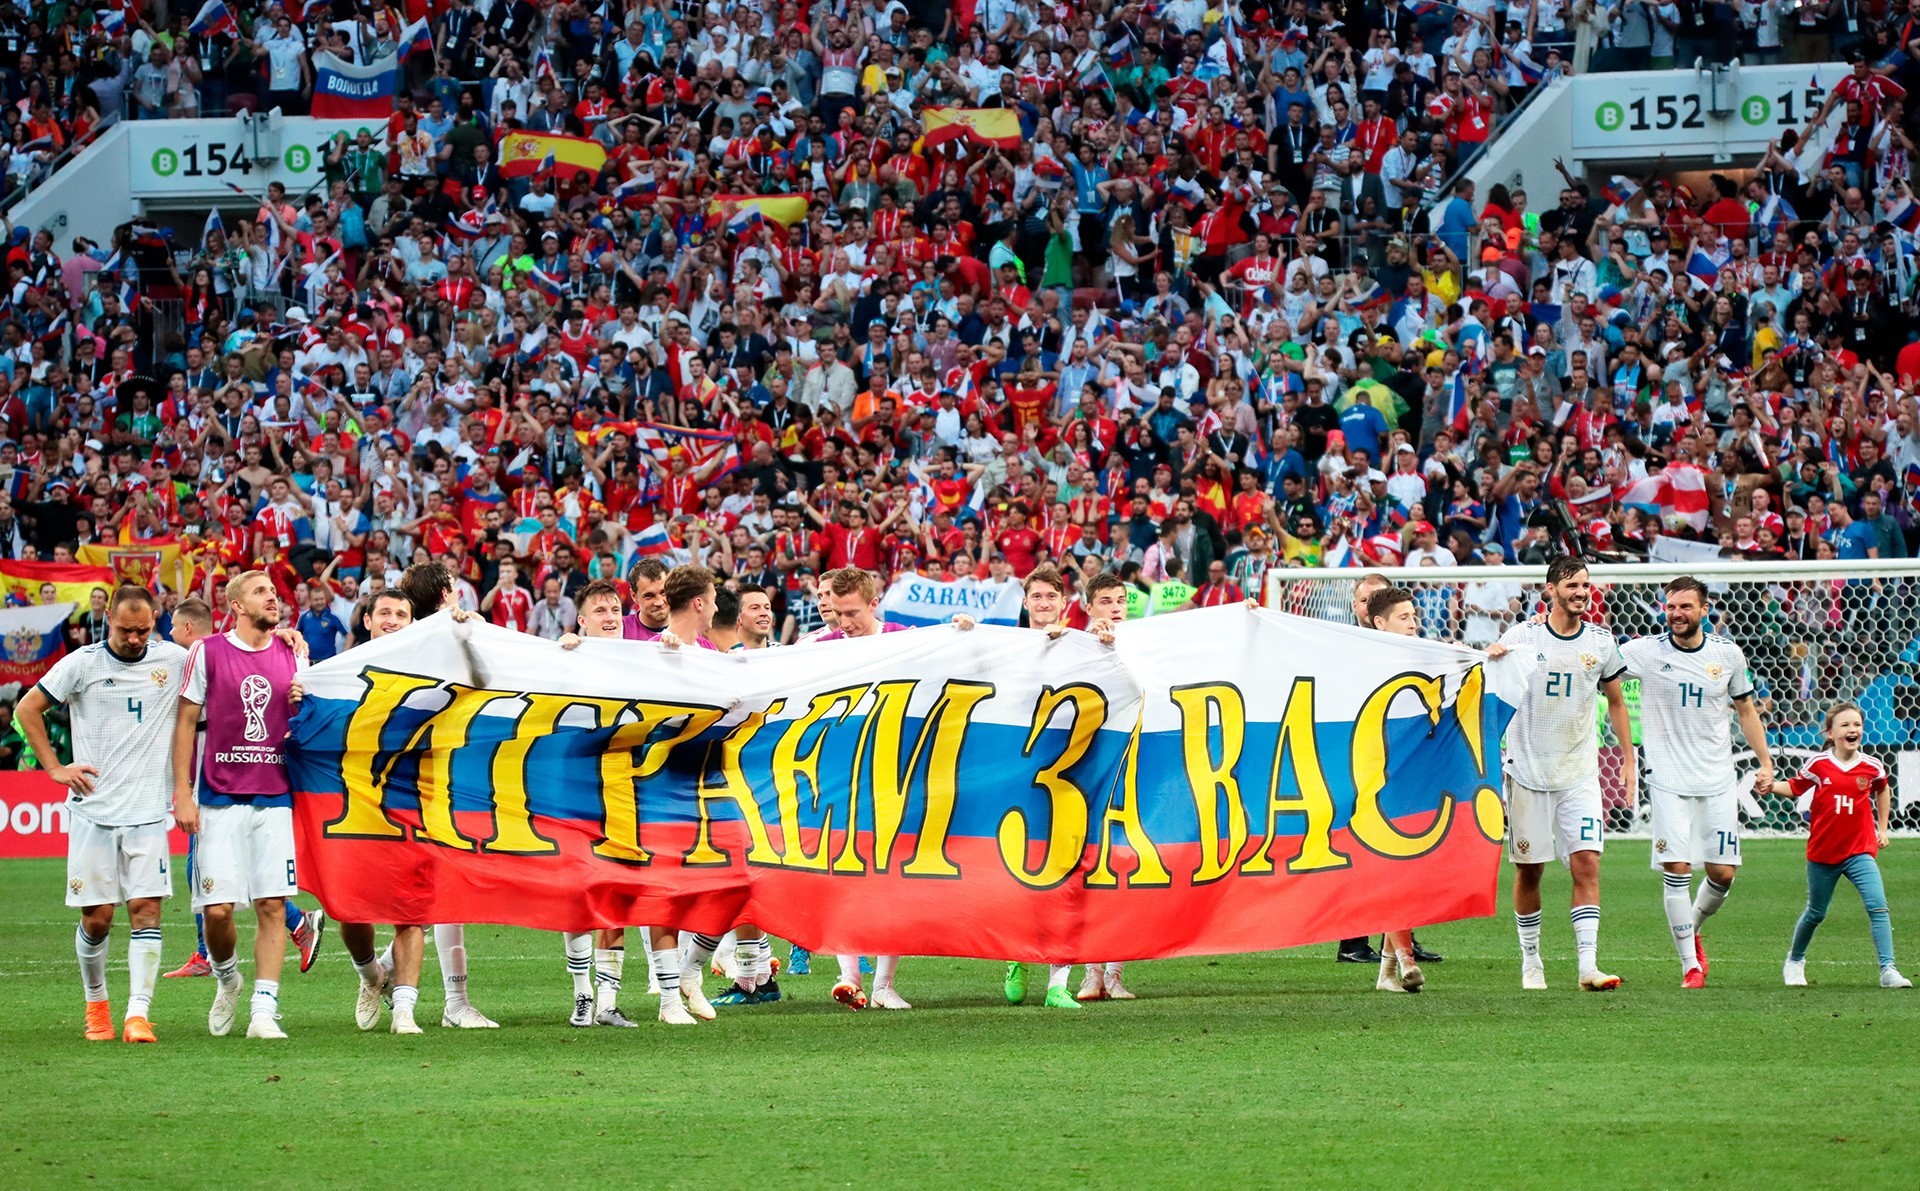 Nogometaši Rusije s transparentom »Igramo za vas«